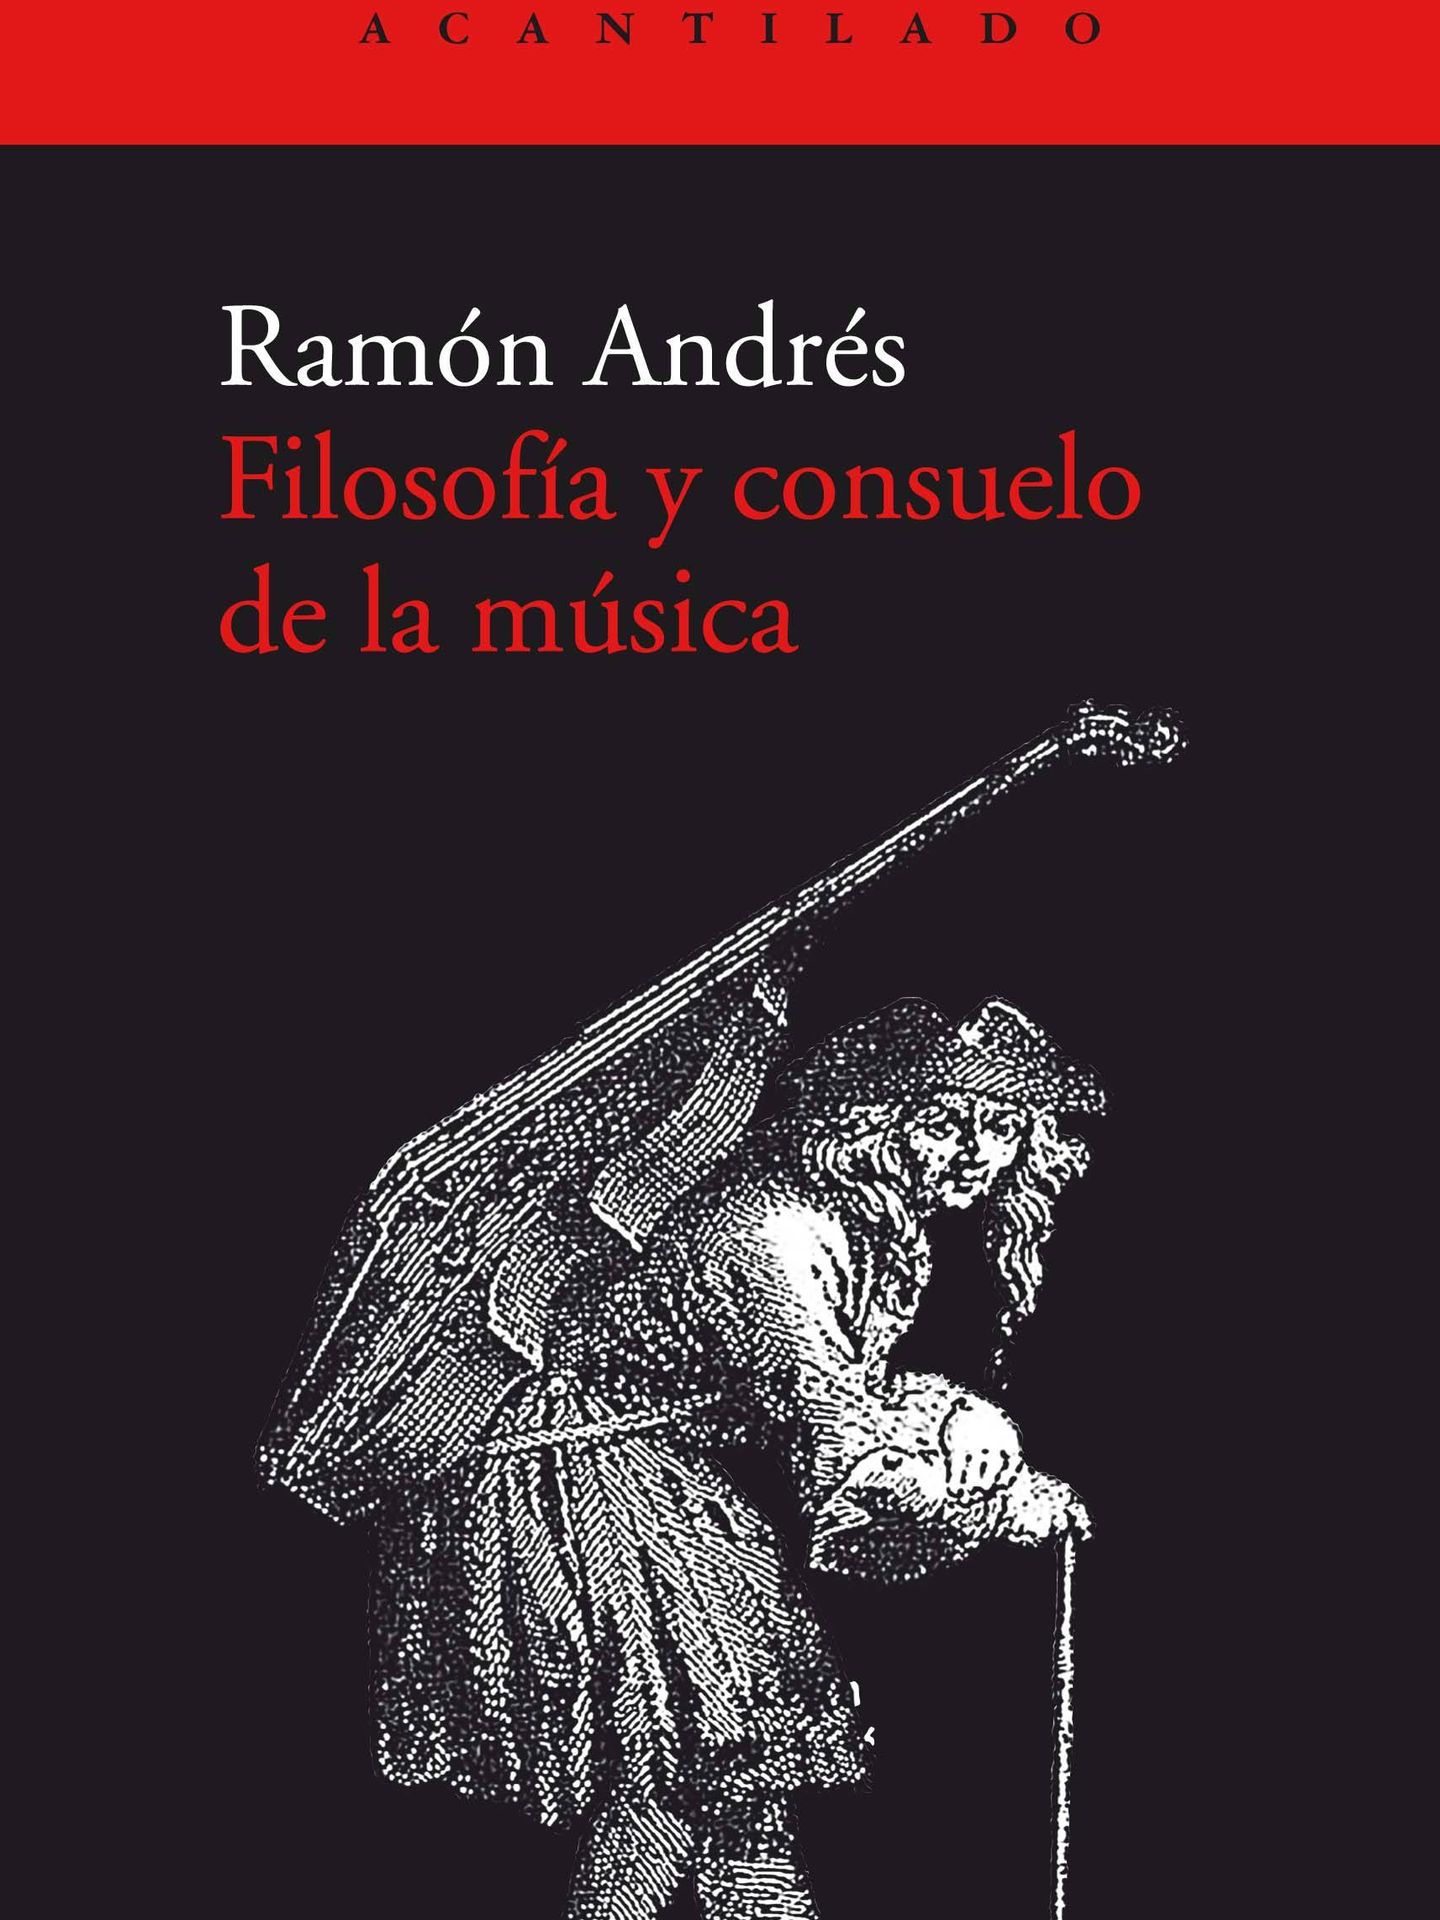 'Filosofía y consuelo de la música'. 